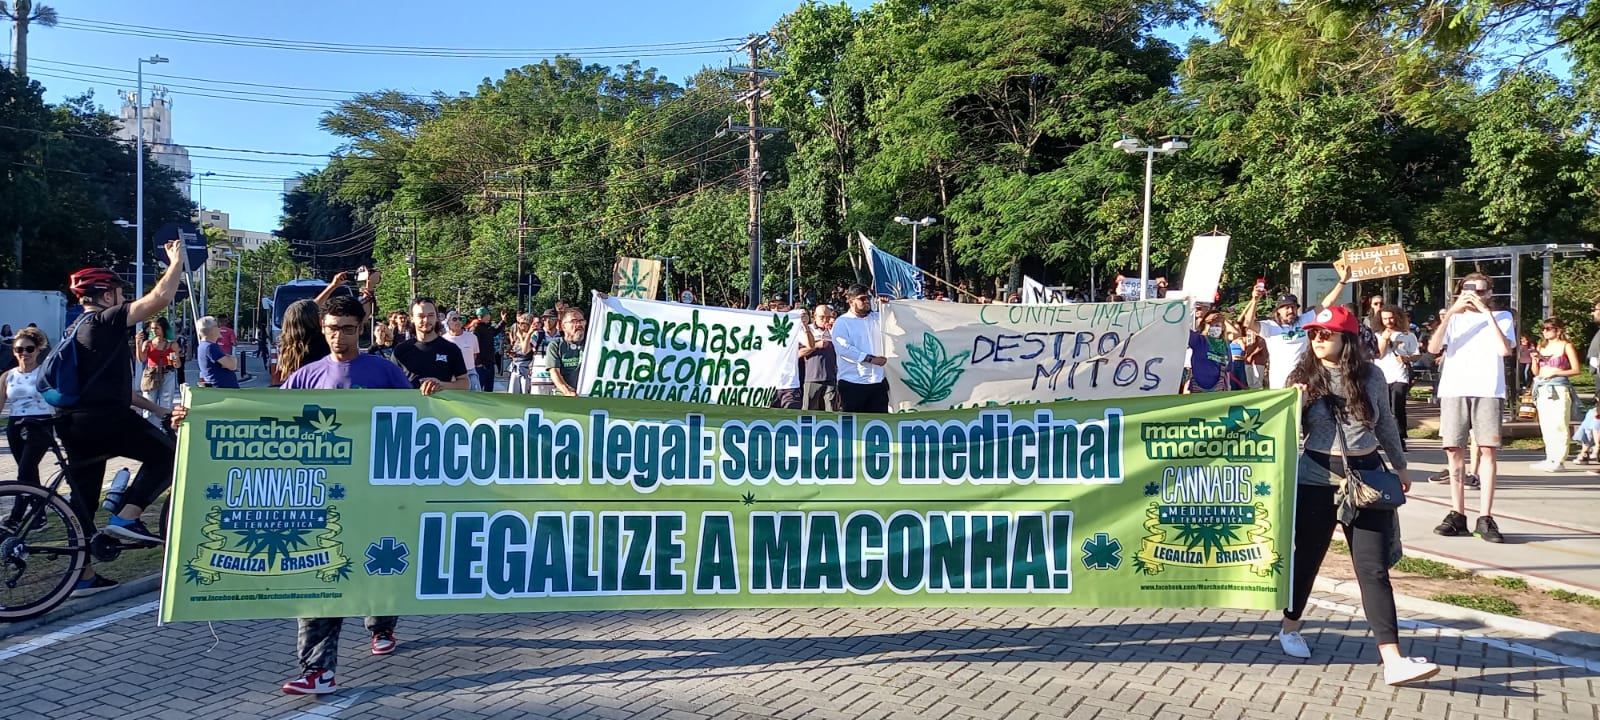 Cerca de 300 pessoas participaram da Marcha da Maconha em Florianópolis